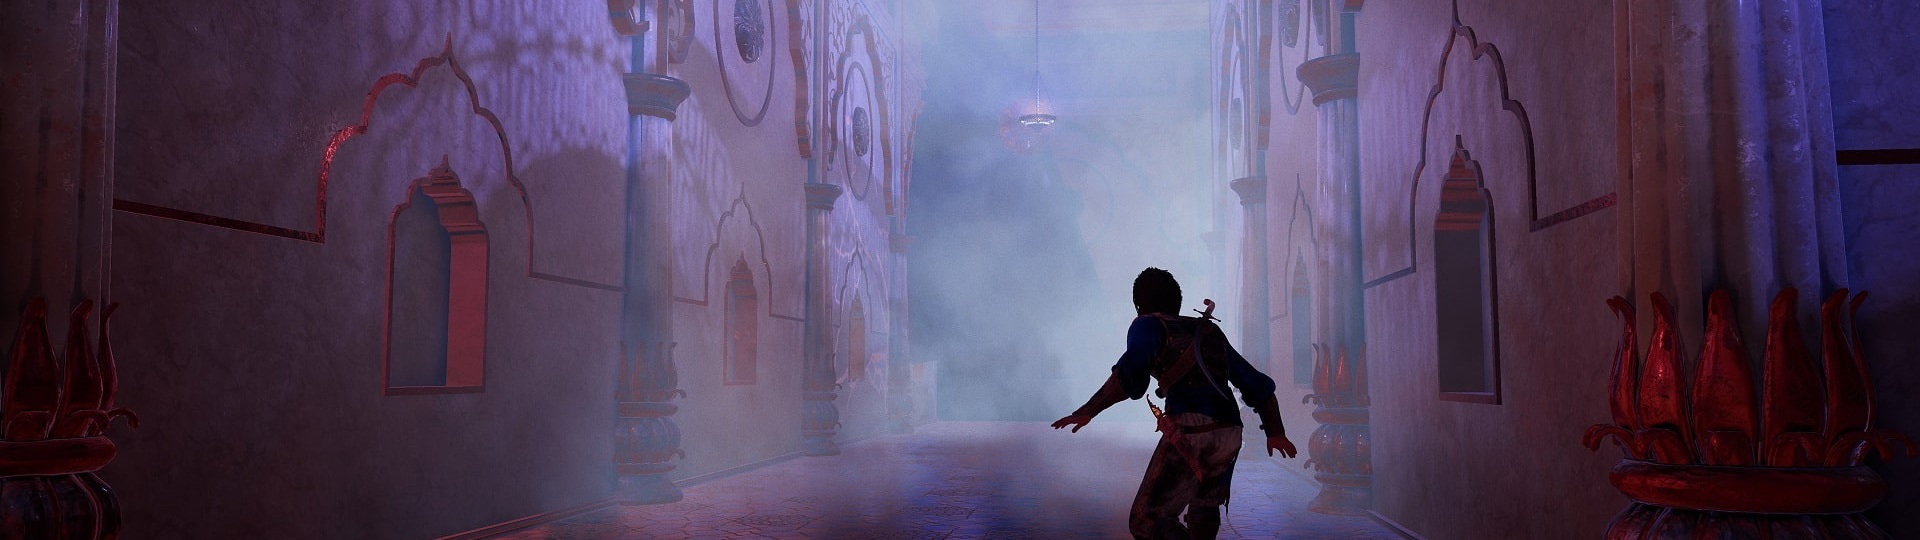 Prince of Persia Remake je zřejmě v krizi a vývoj přebírá jiné studio | Novinky